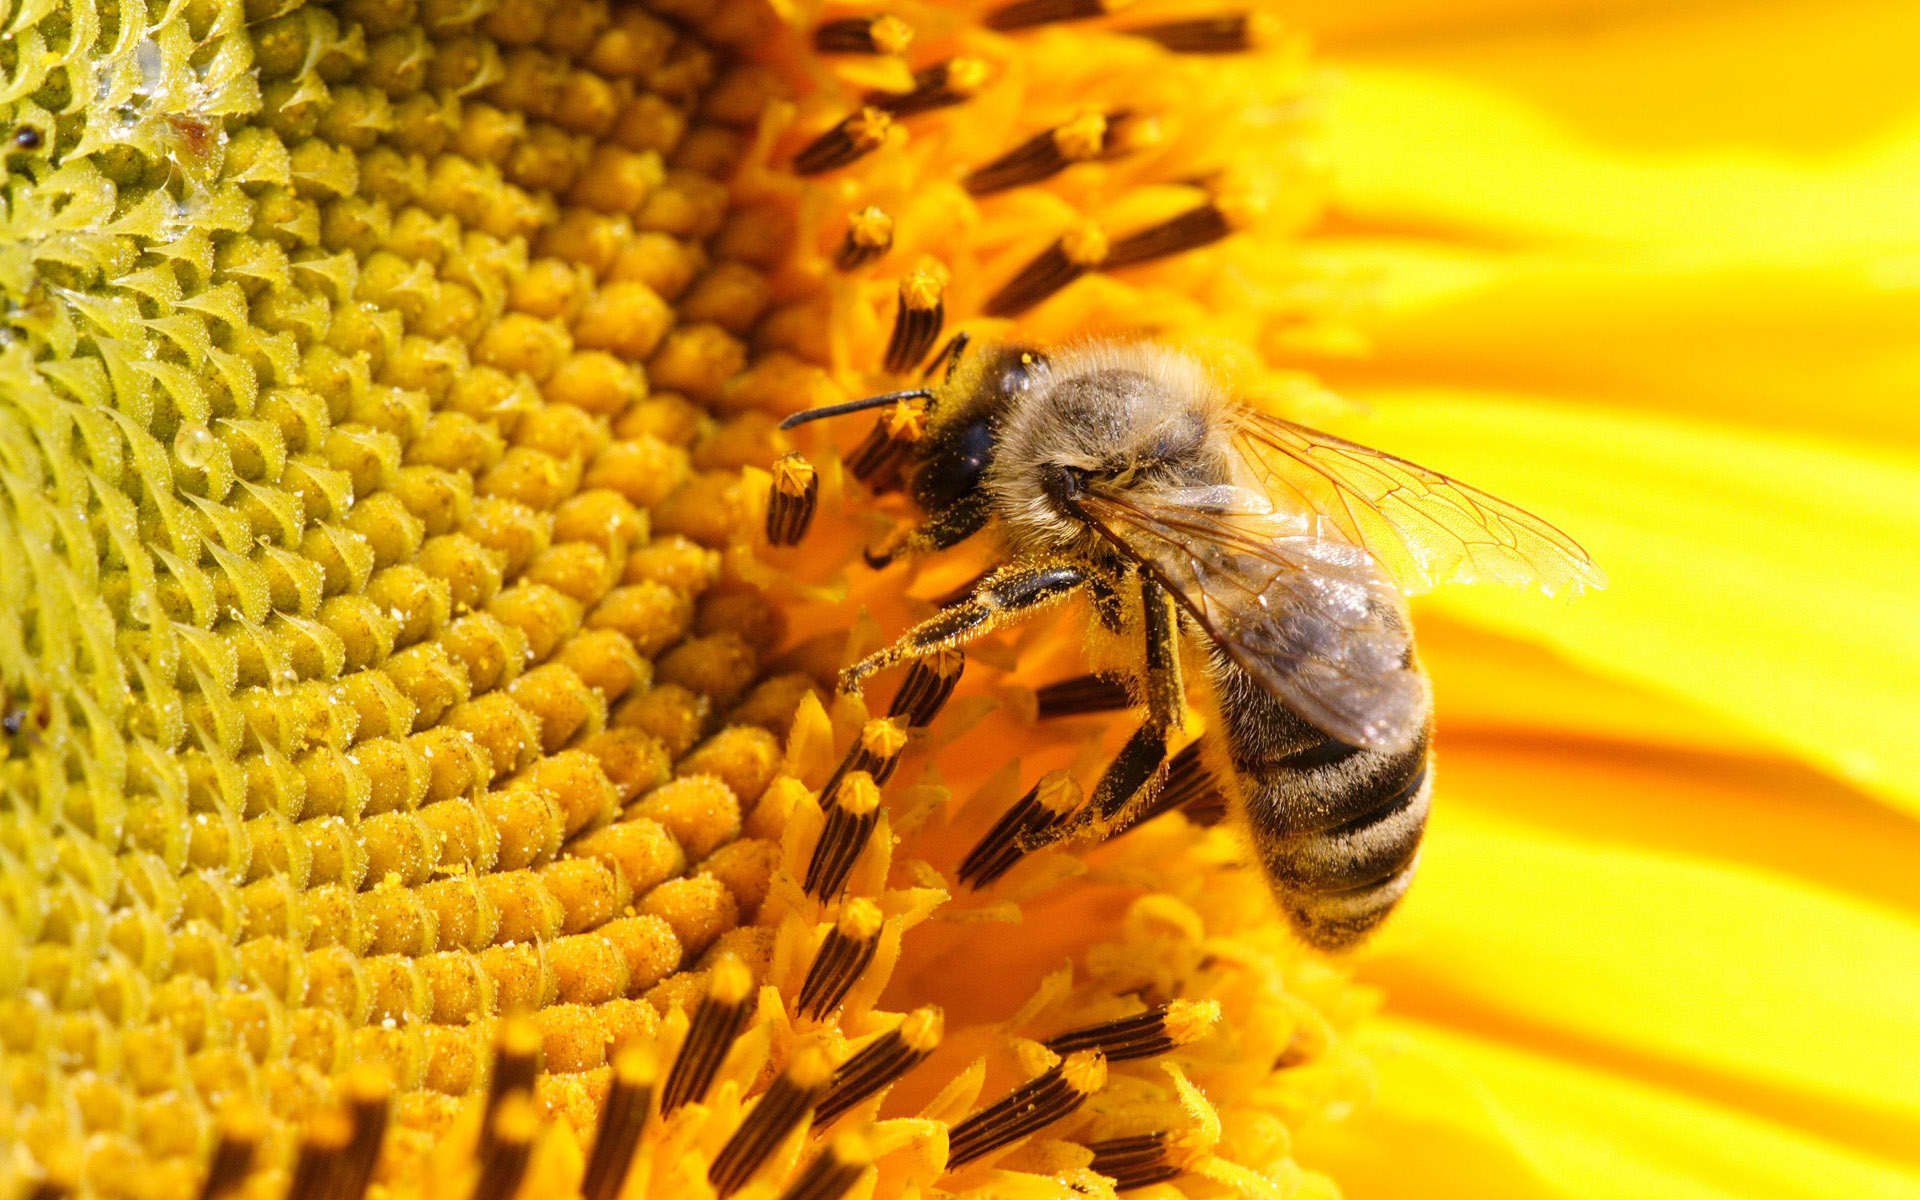 Honey bee on sunflowers